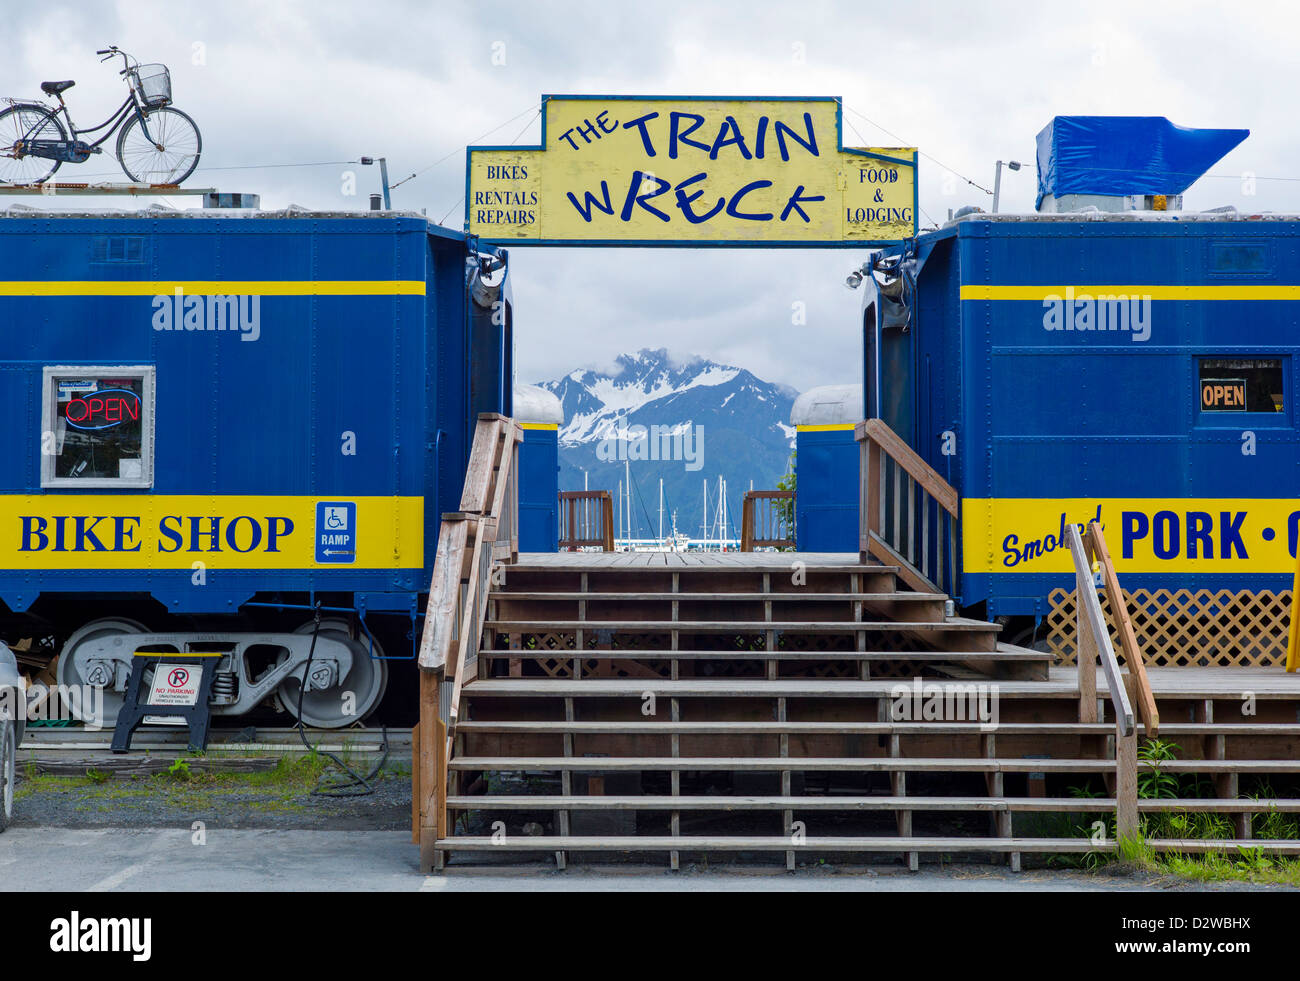 L'accident de train, collection de wagons rénovés de l'Alaska Railroad désormais un centre de Smoke Shop Café, magasin de vélos et Seward, AK Banque D'Images